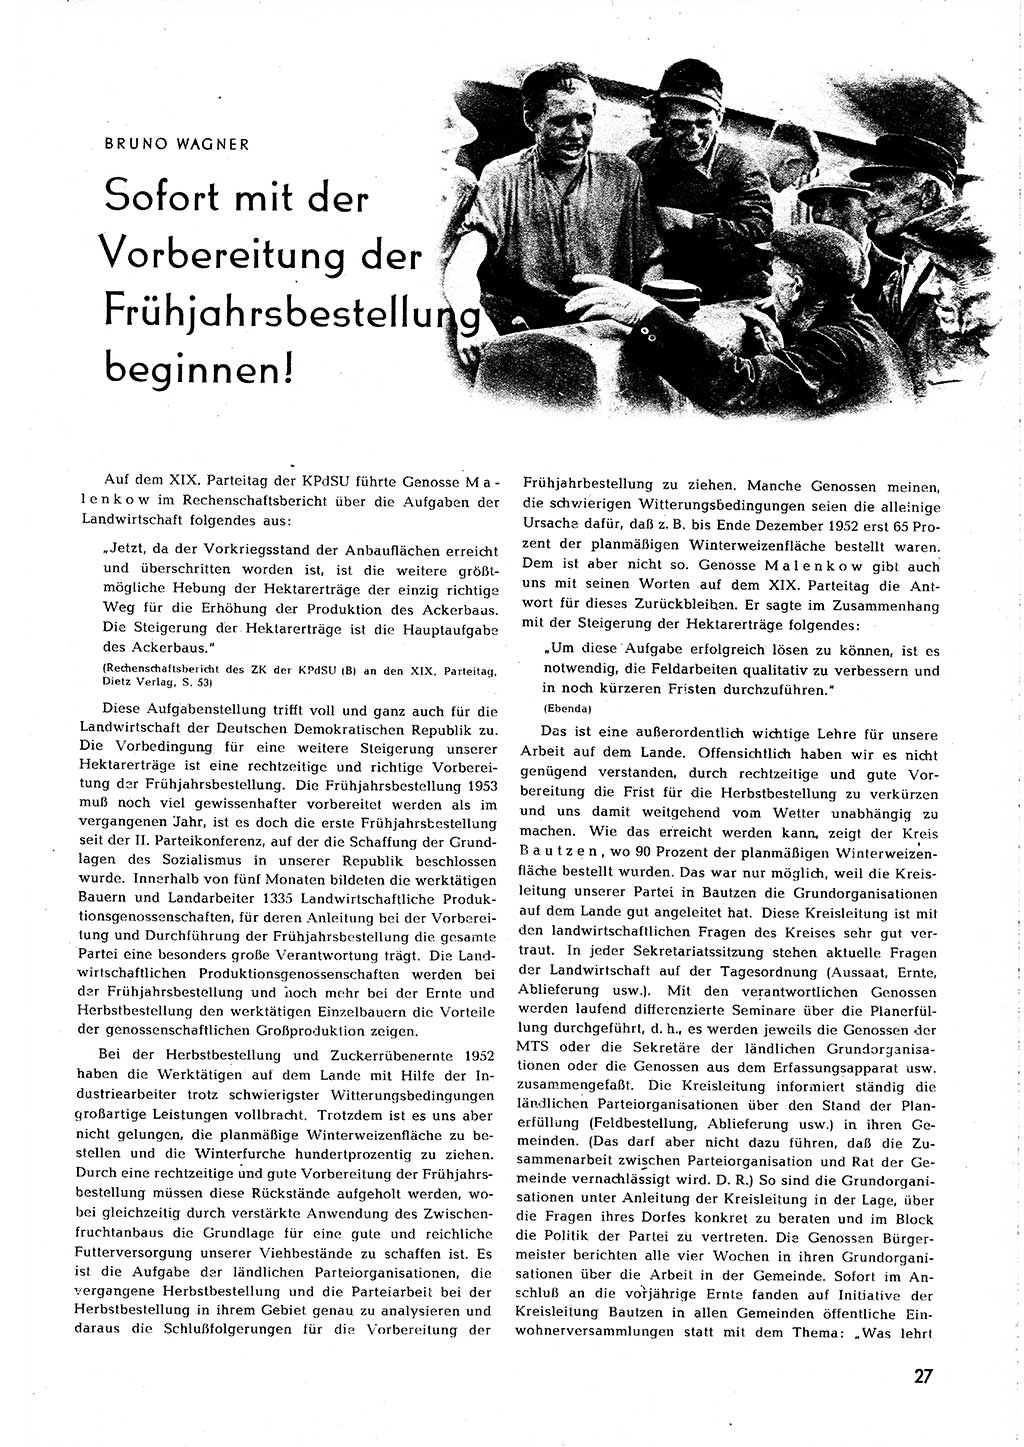 Neuer Weg (NW), Organ des Zentralkomitees (ZK) [Sozialistische Einheitspartei Deutschlands (SED)] für alle Parteiarbeiter, 8. Jahrgang [Deutsche Demokratische Republik (DDR)] 1953, Heft 2/27 (NW ZK SED DDR 1953, H. 2/27)